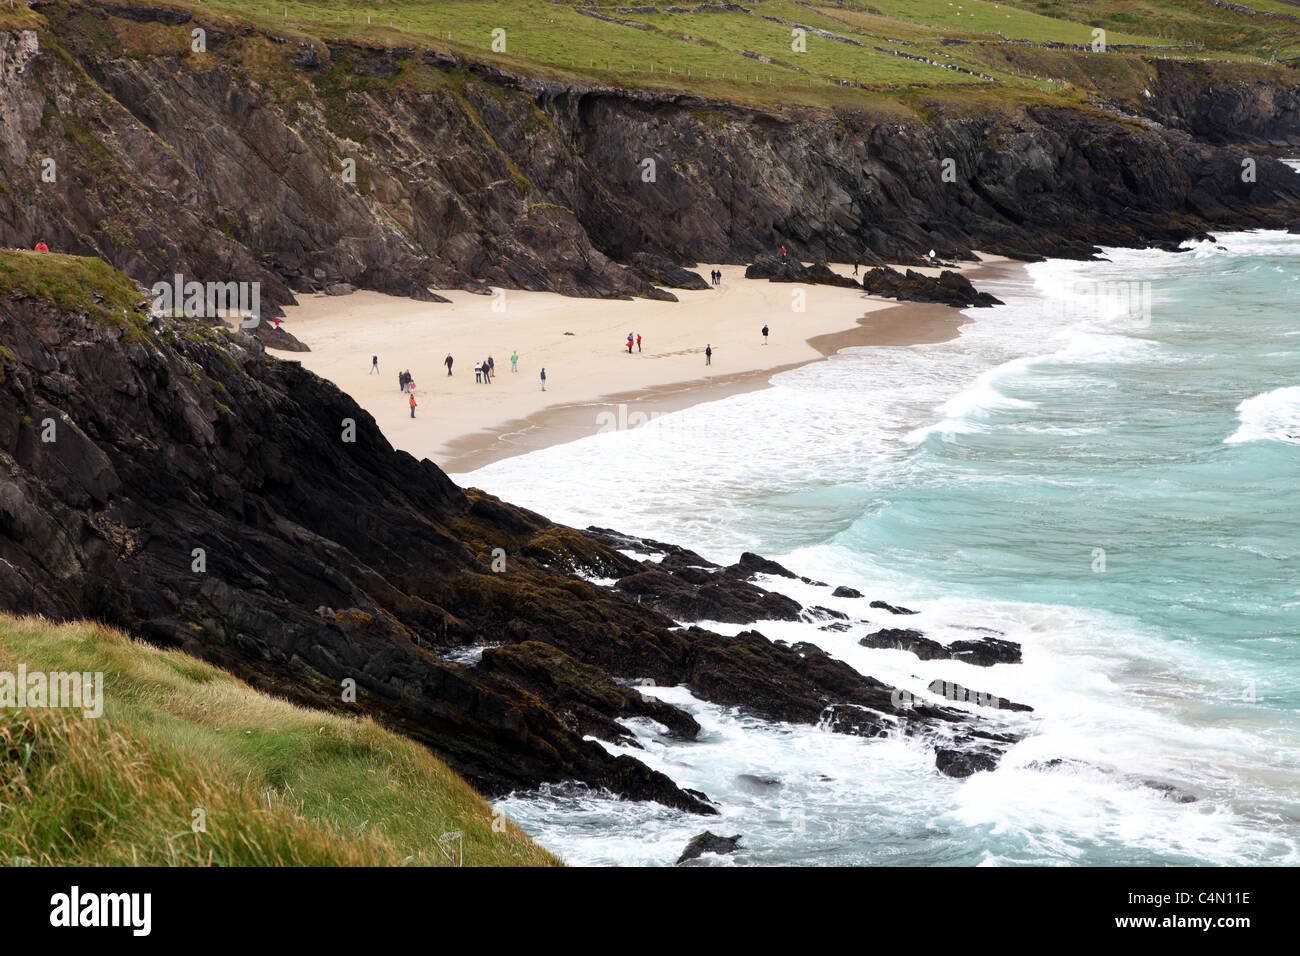 rainy day on the beach, Slea Head, Dingle Peninsula, Ireland Stock Photo